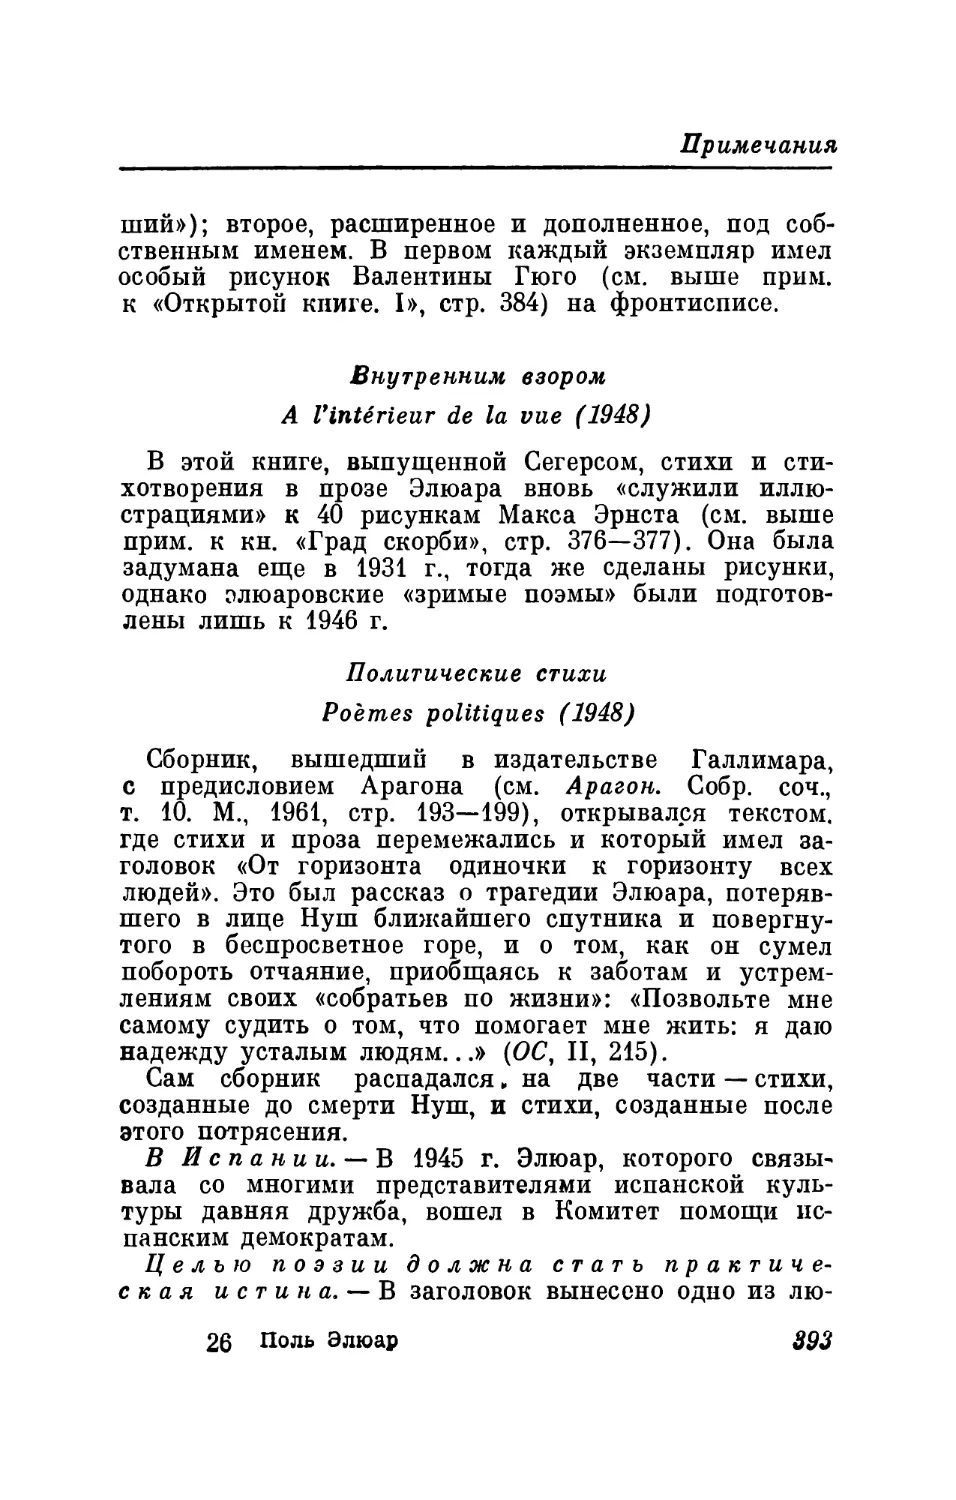 Внутренним взором. 8 зримых поэм. 1948
Политические стихи. 1948